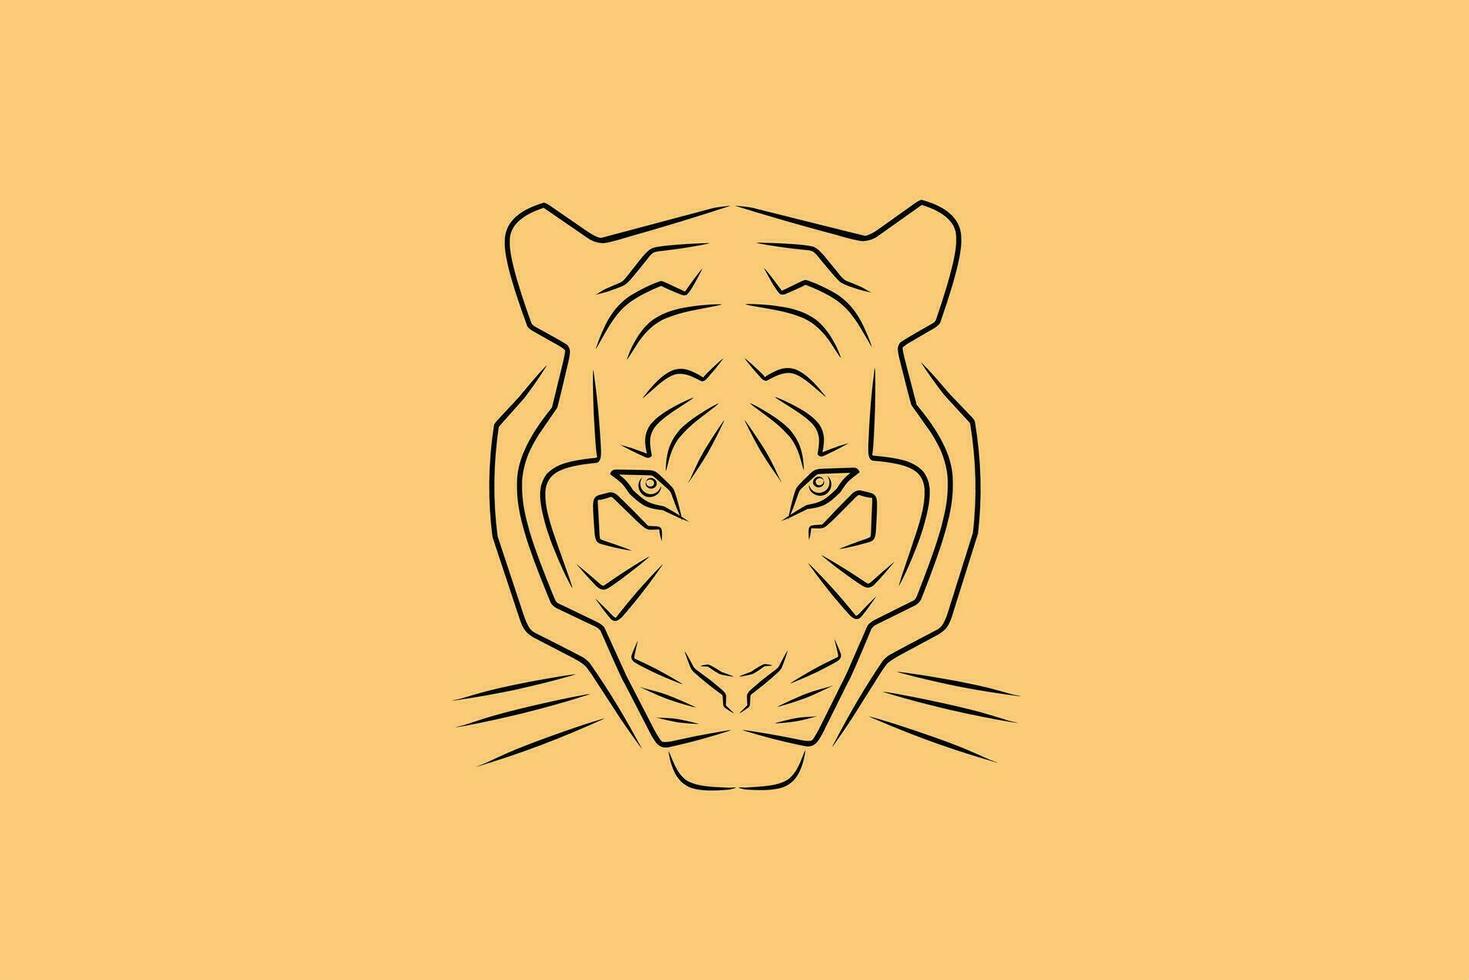 Tiger Vektor Illustration, einzigartig kreativ Design Kunst, einfach mit abstrakt Linien, mutig und schneidig Tiger Gesicht.